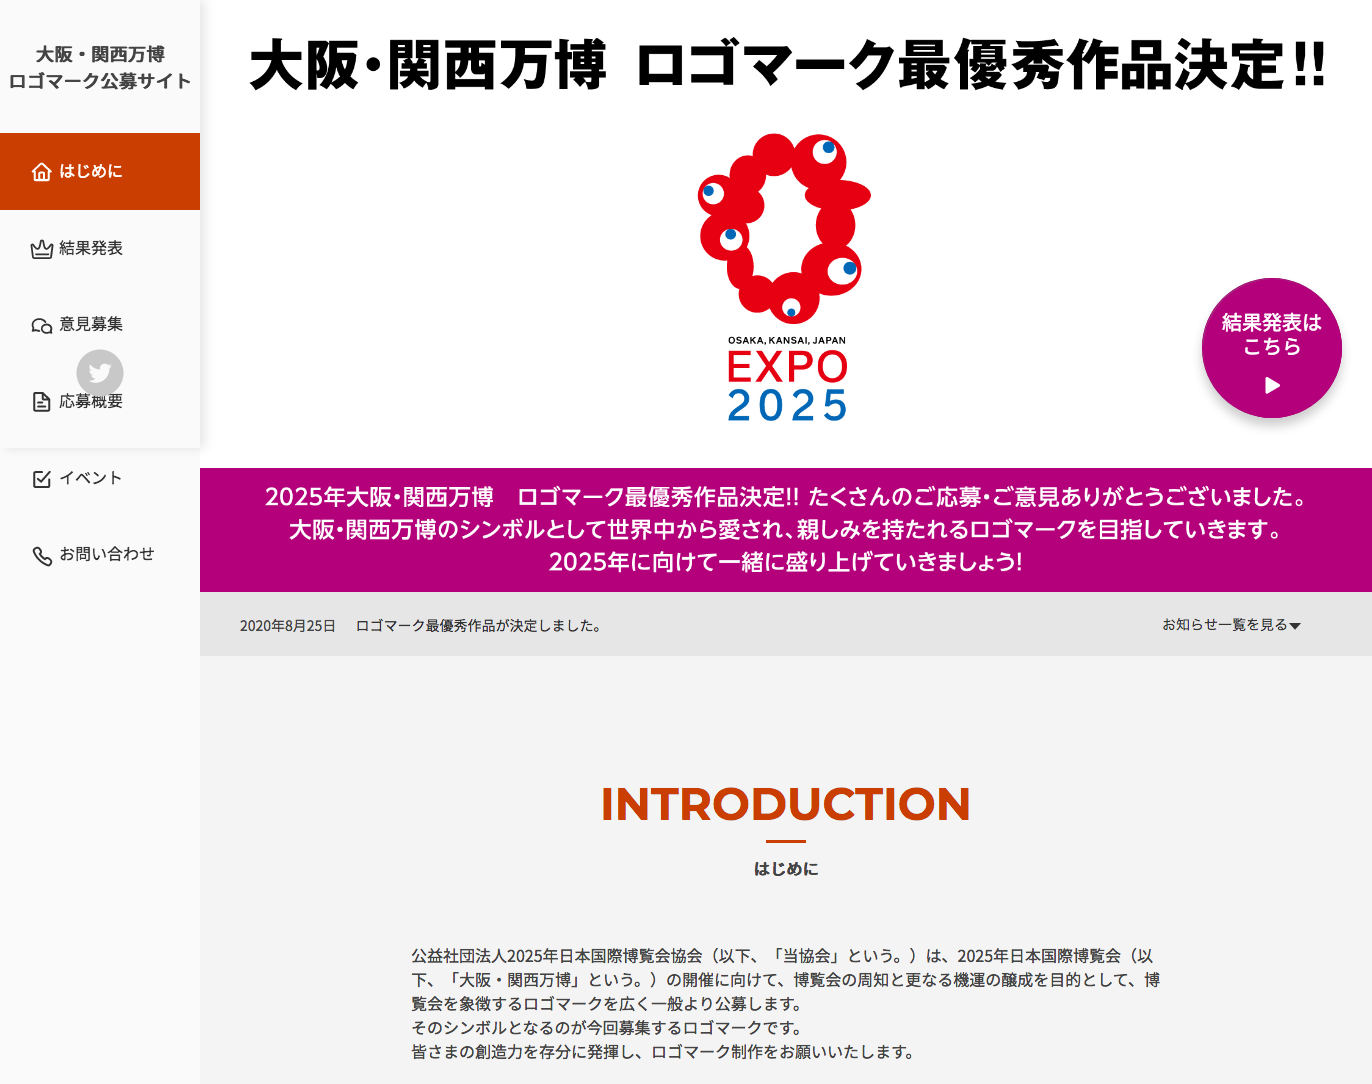 EXPO 2025 Logo Contest Website